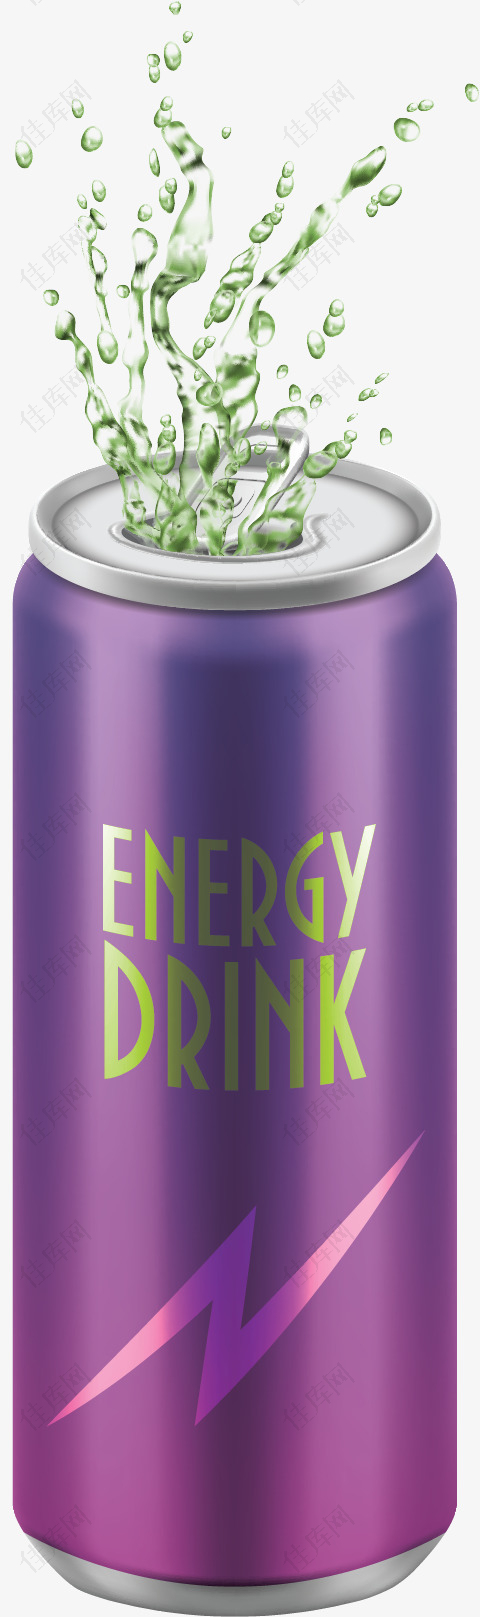 紫色包装能量饮料